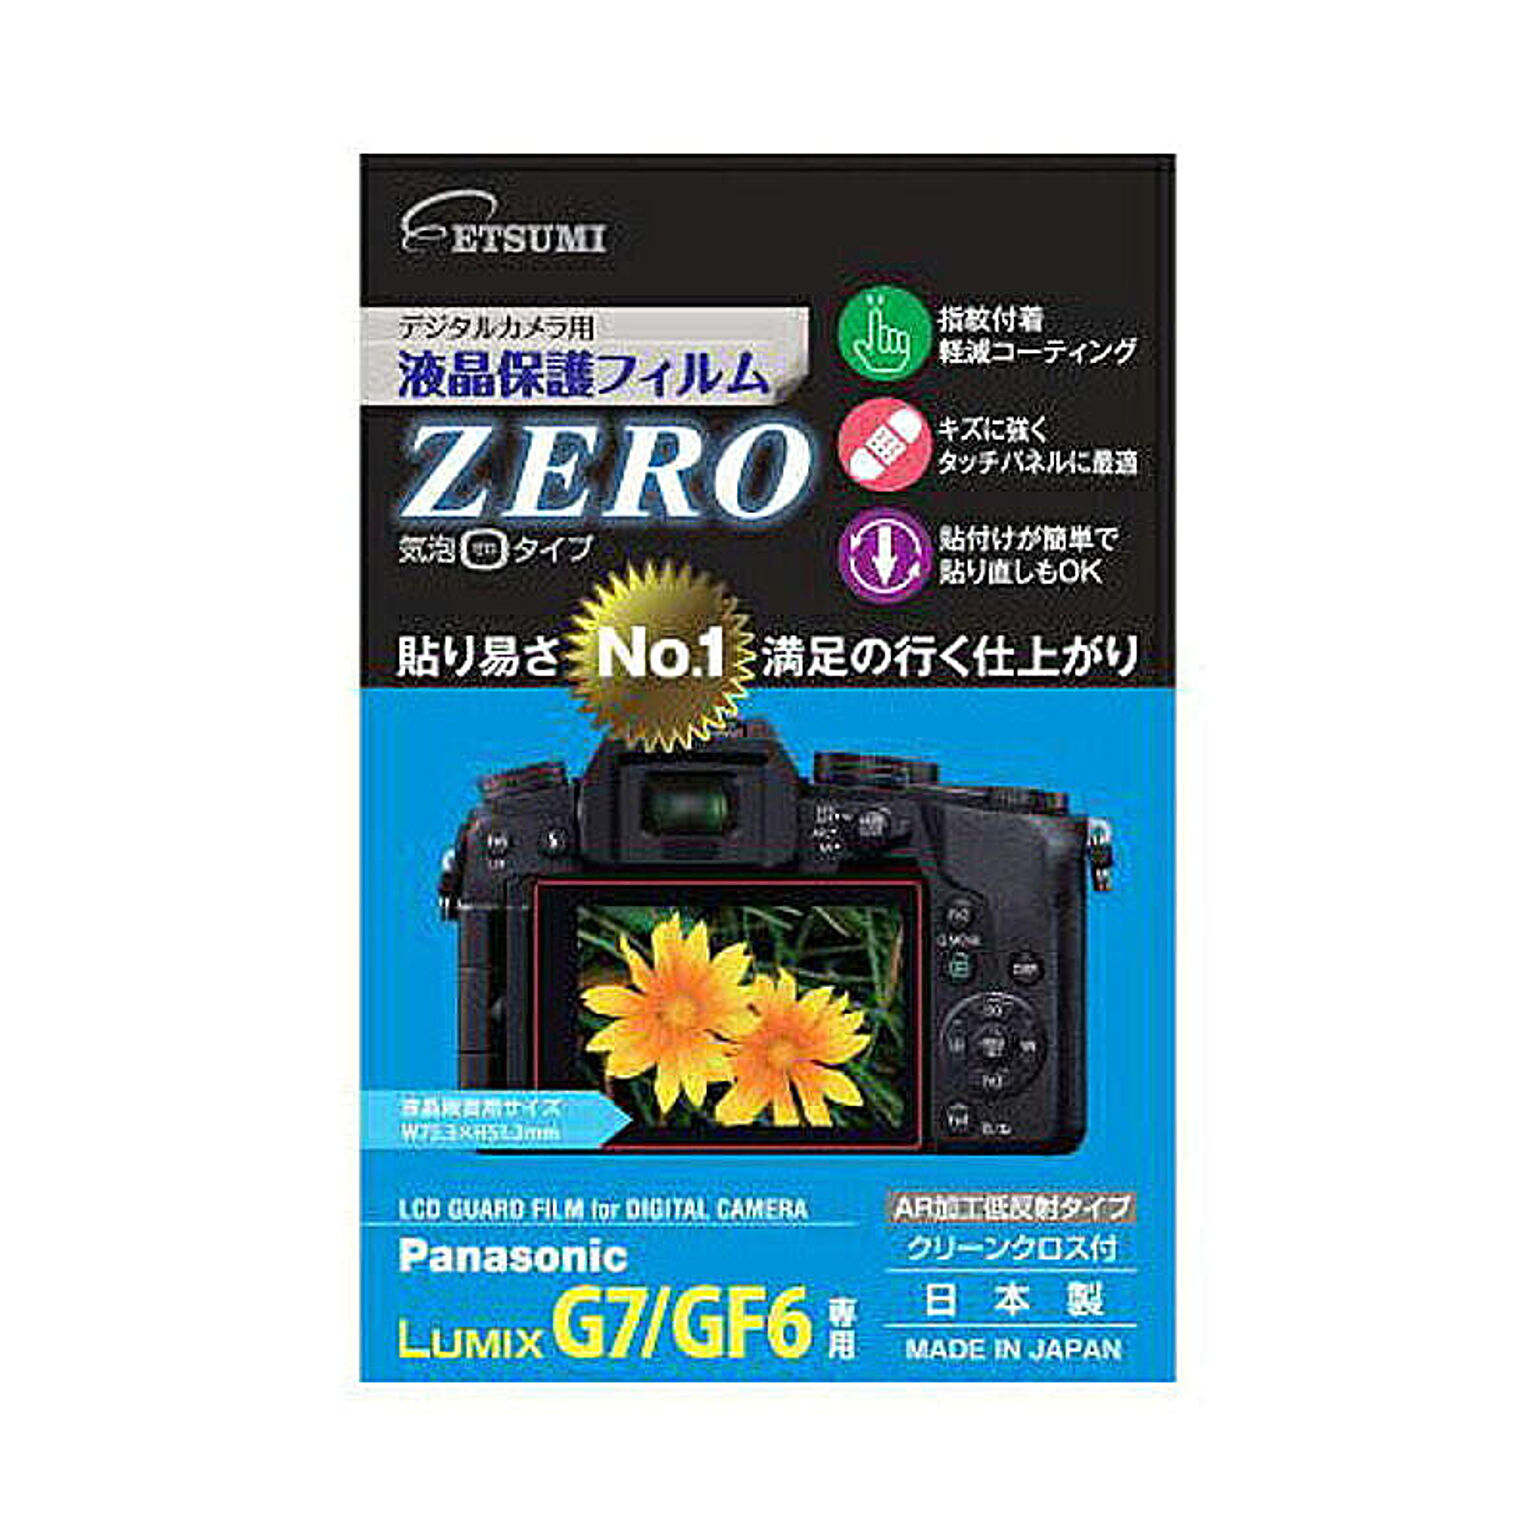 エツミ デジタルカメラ用液晶保護フィルムZERO Panasonic LUMIX G7/GF6専用 E-7309 管理No. 4975981730993